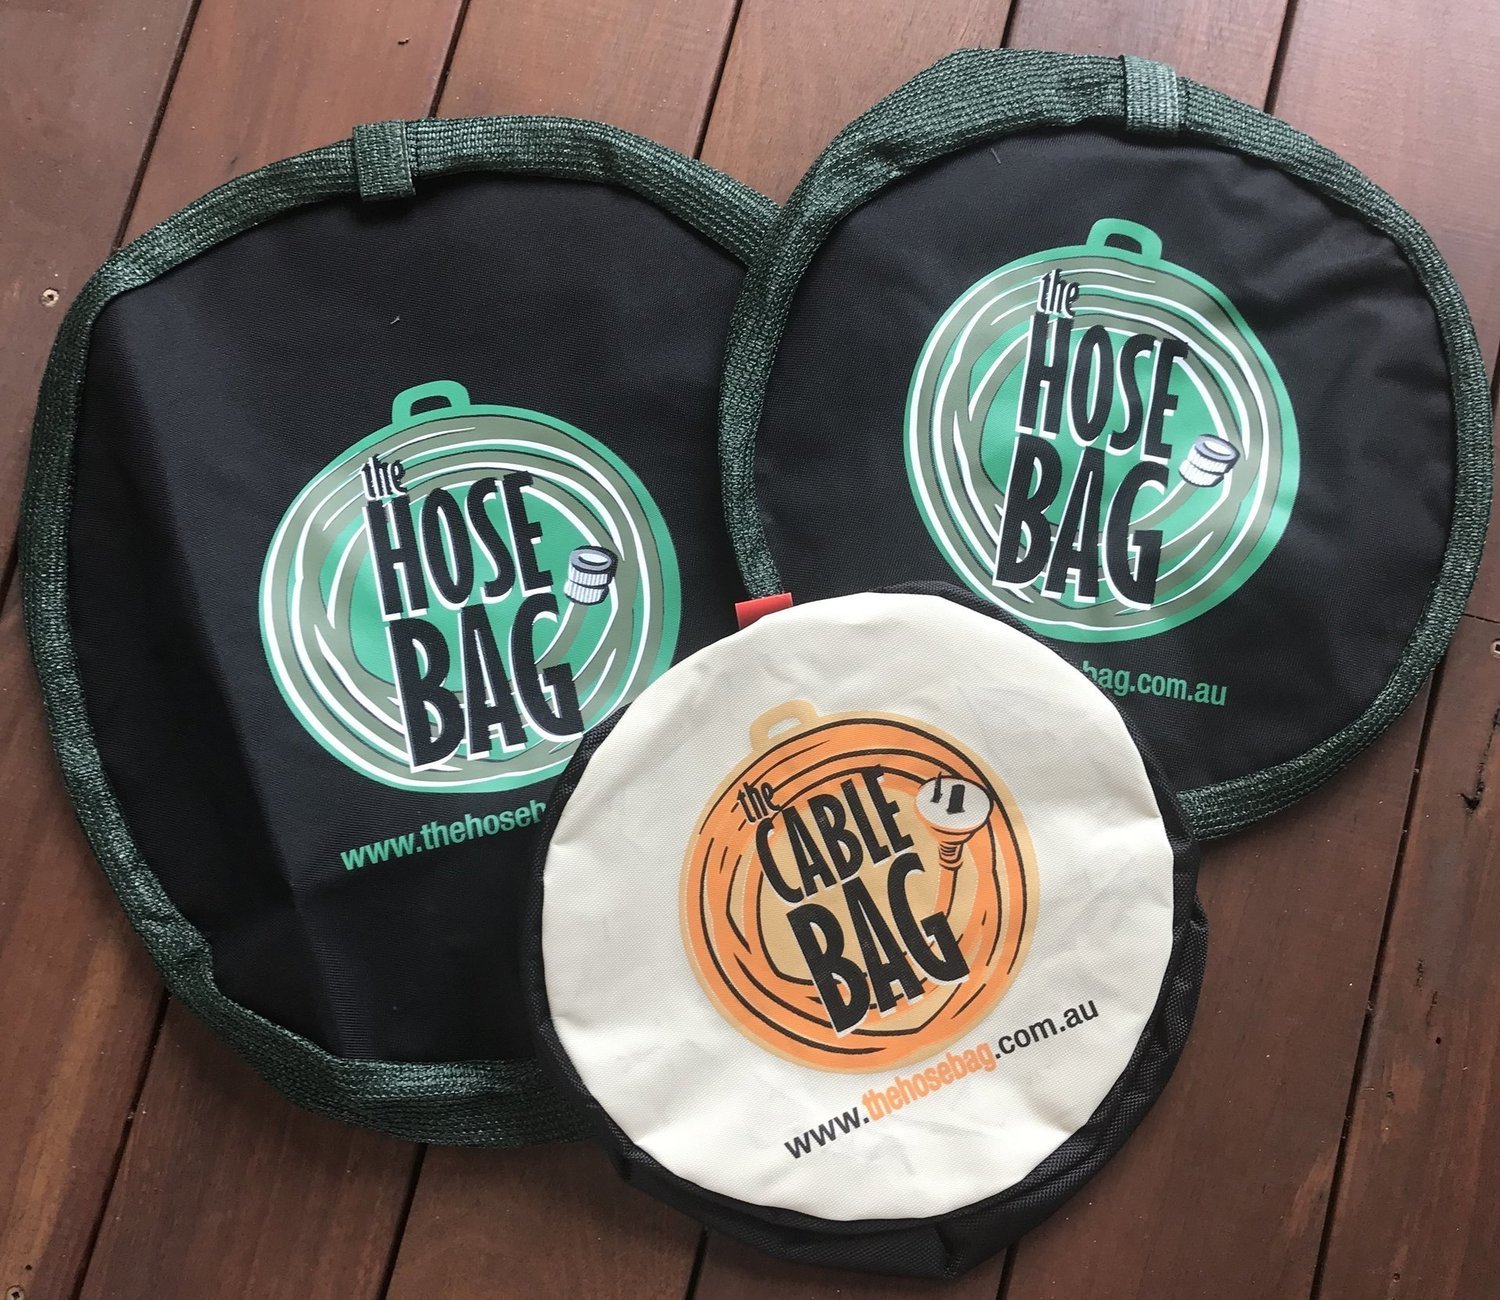 Hose Bag Large – Gipsy Caravans